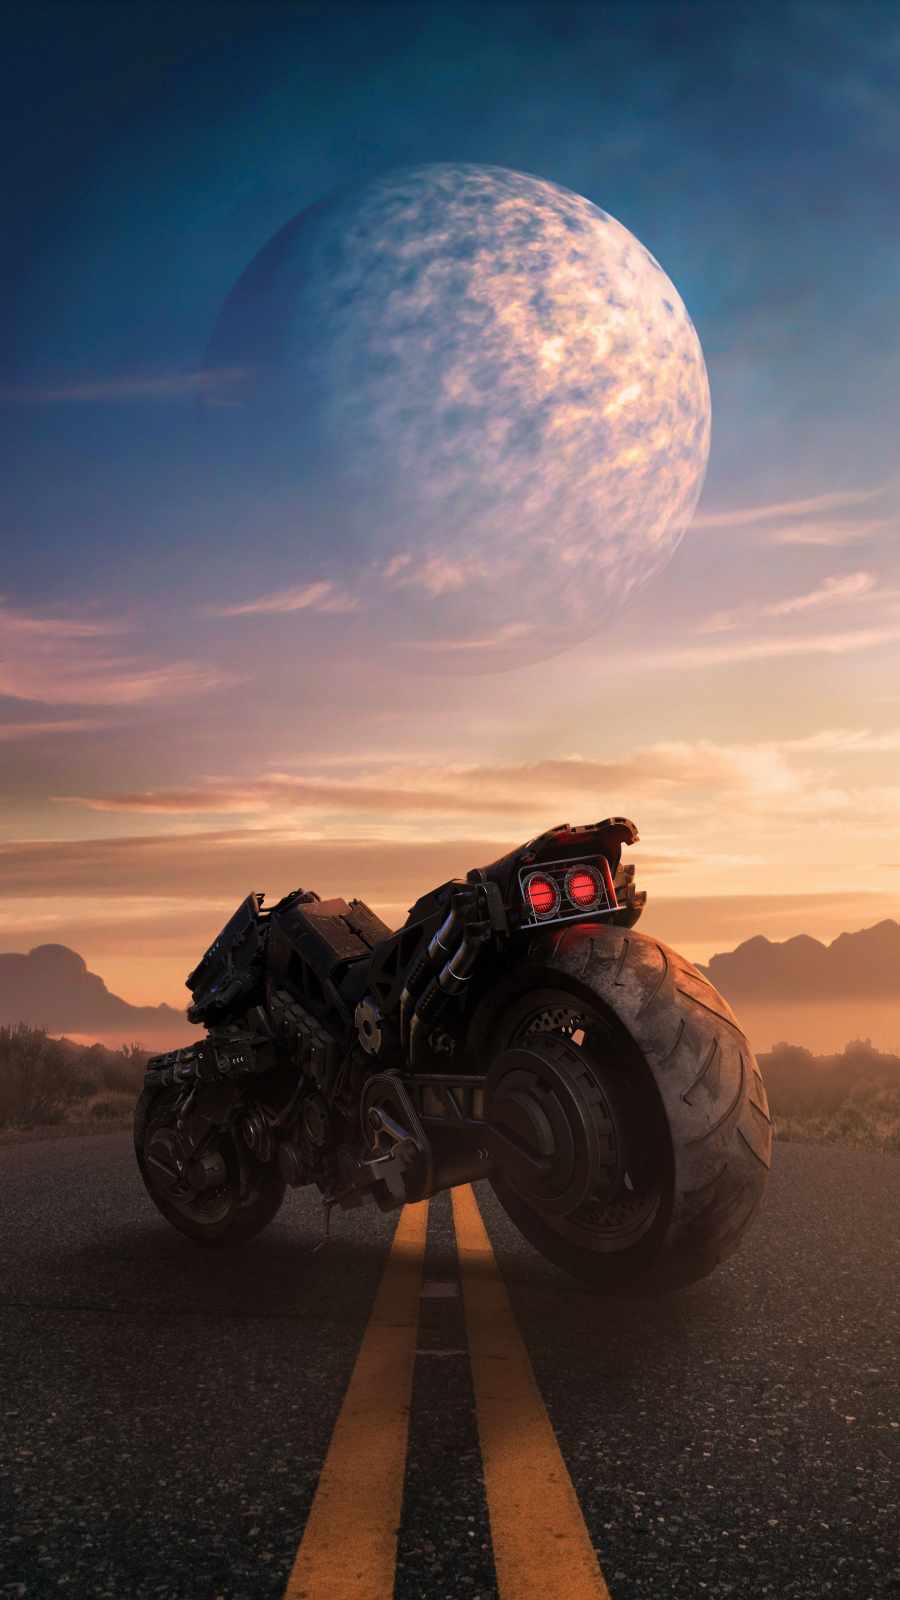 Apocalyptic Motorcycle